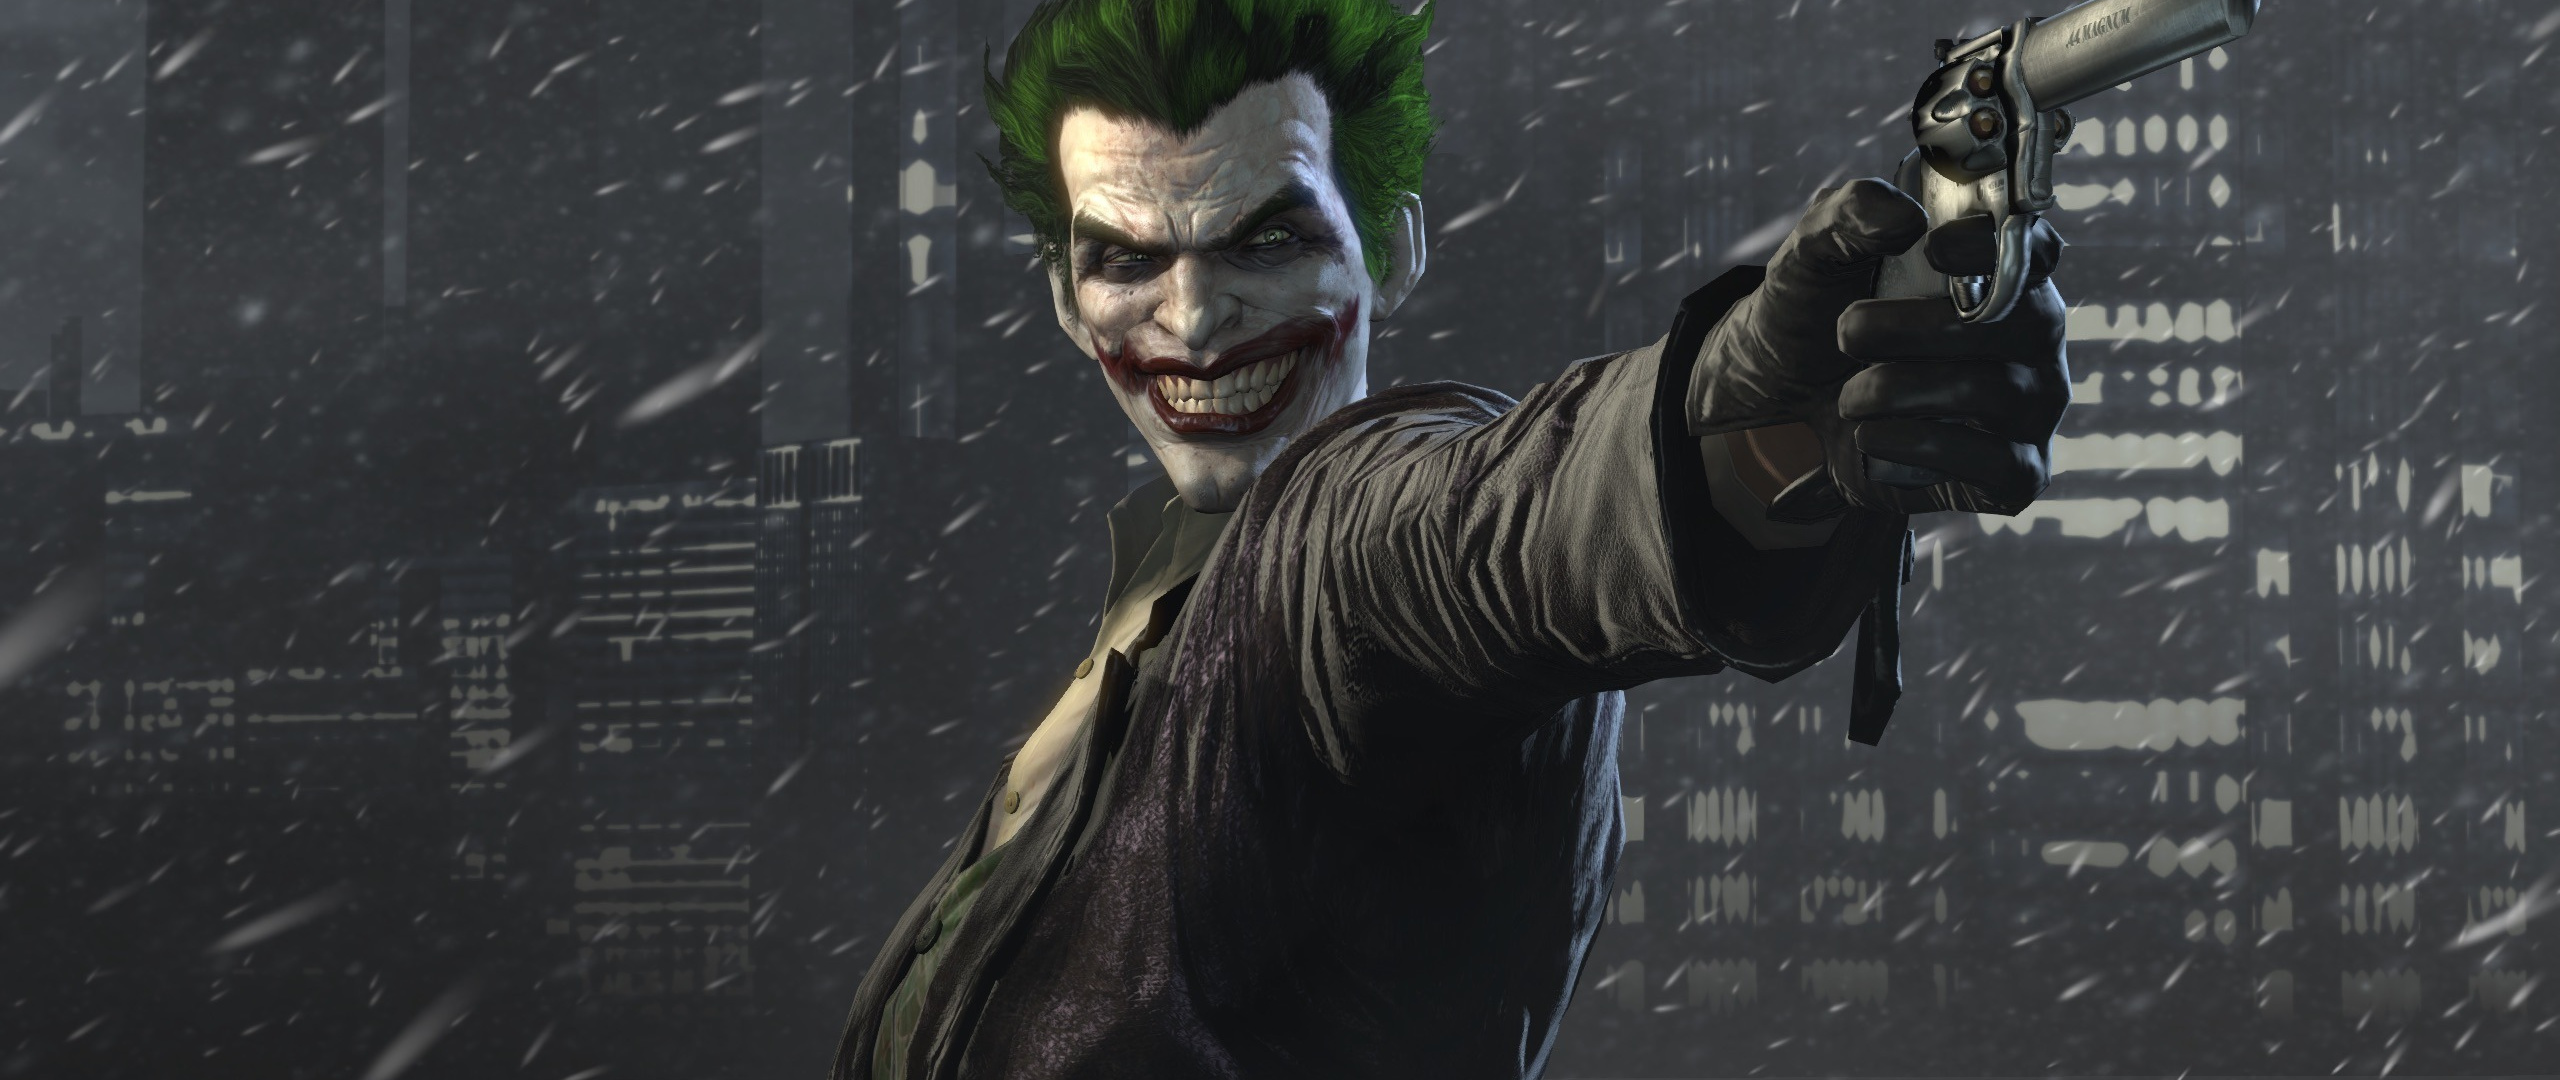 Video Game, Batman - Joker Wallpaper Hd Iphone - HD Wallpaper 